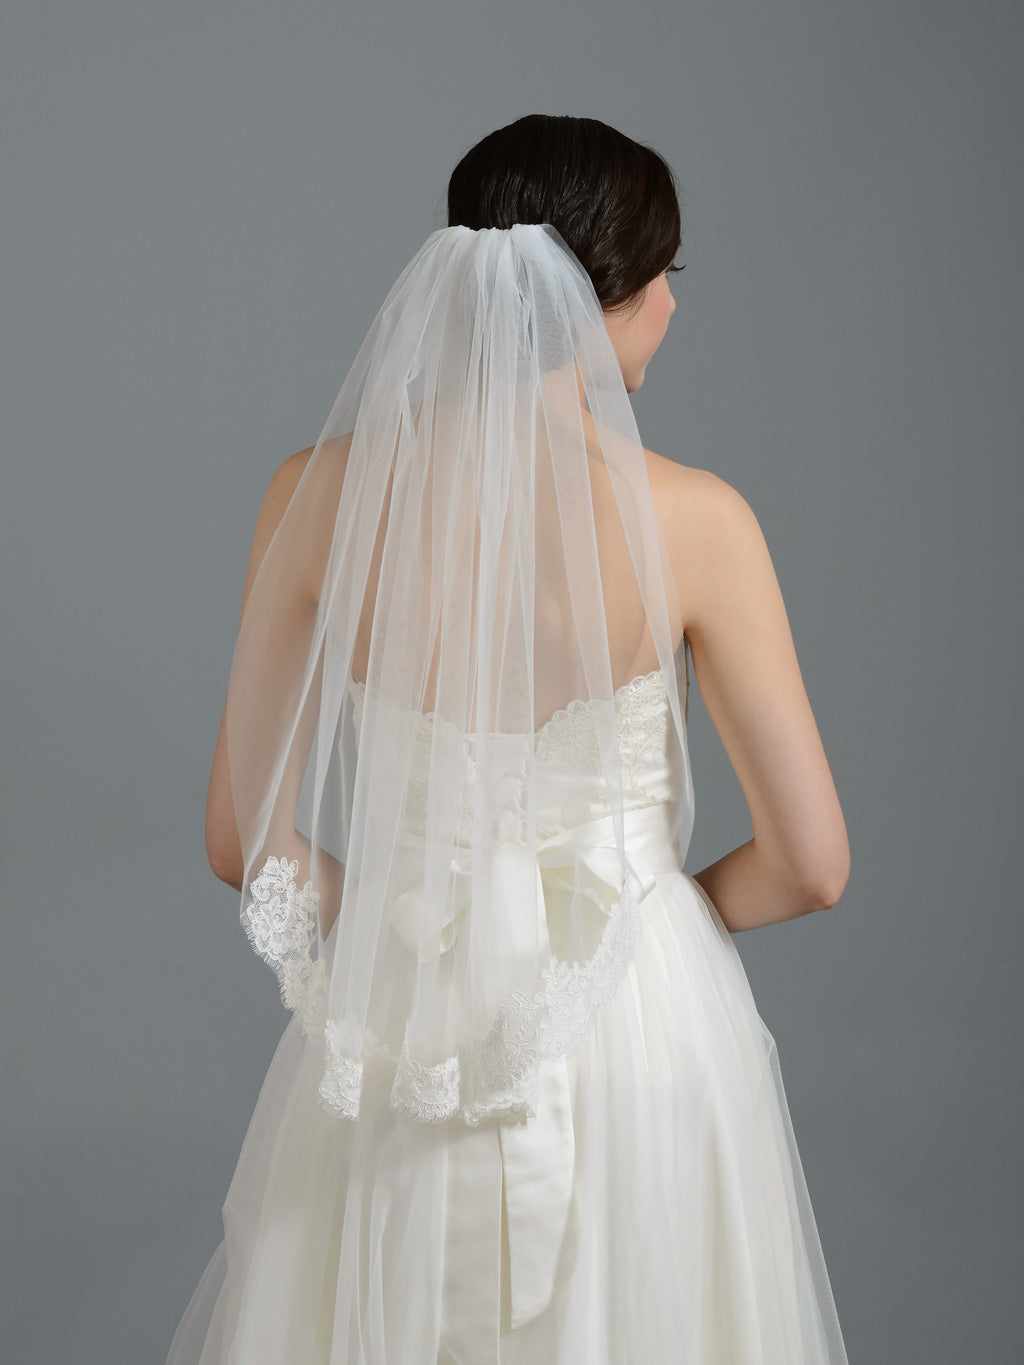 https://www.tulipbridal.com/cdn/shop/products/wedding-veil-050-back.jpg?v=1691384566&width=1445